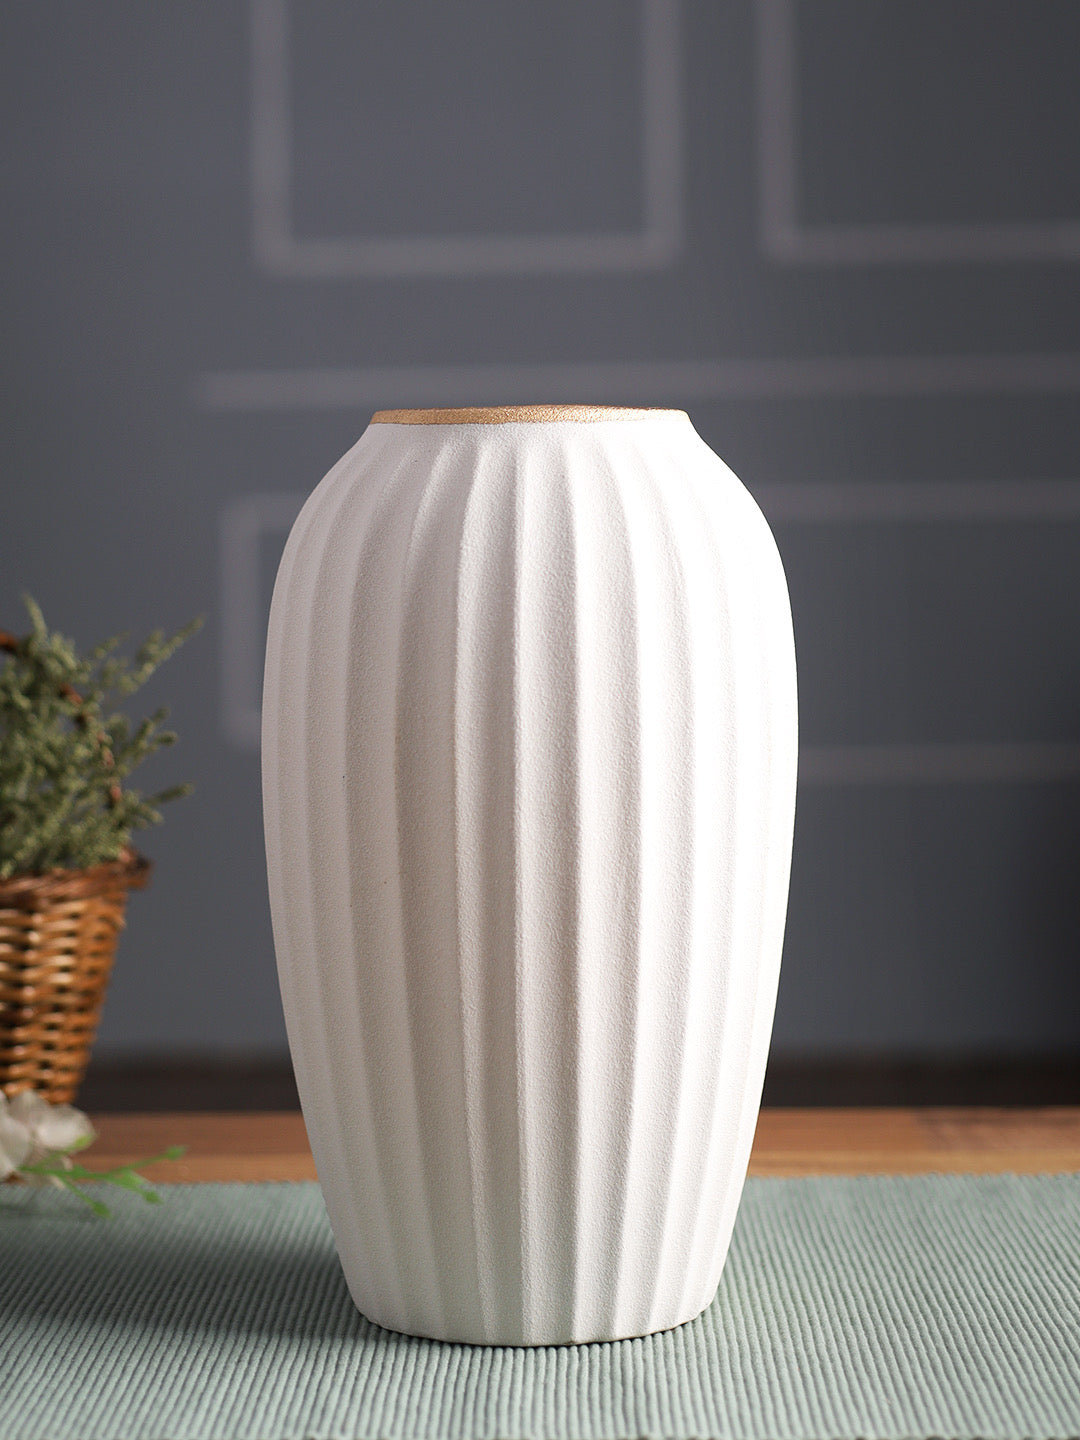 Ribbed Flower Vase - Default Title (VAS22395)